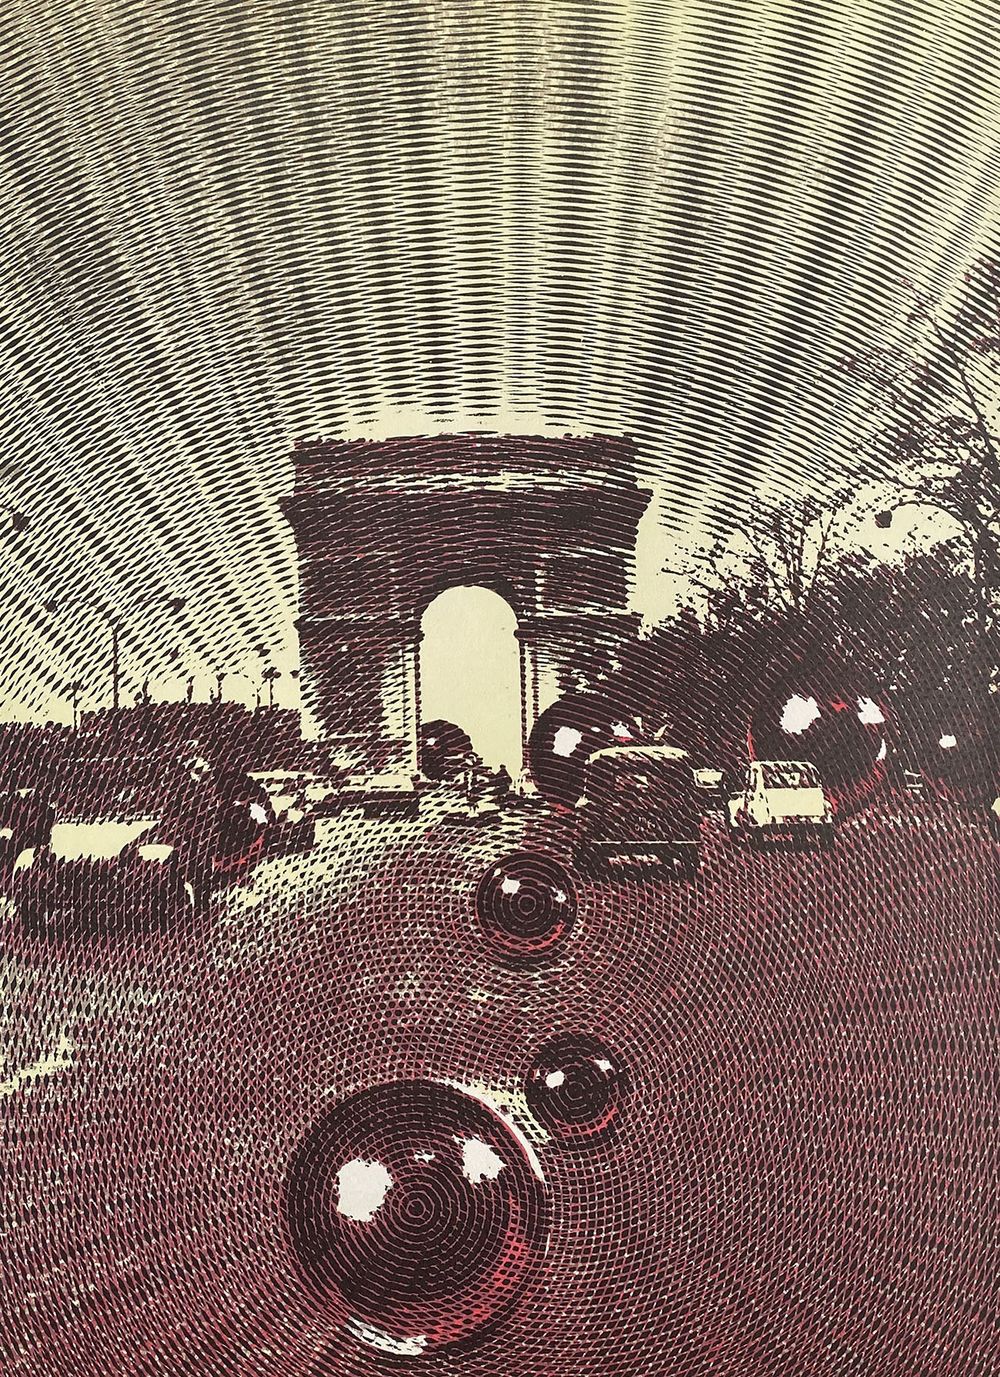 DLM191 - Arc de Triomphe